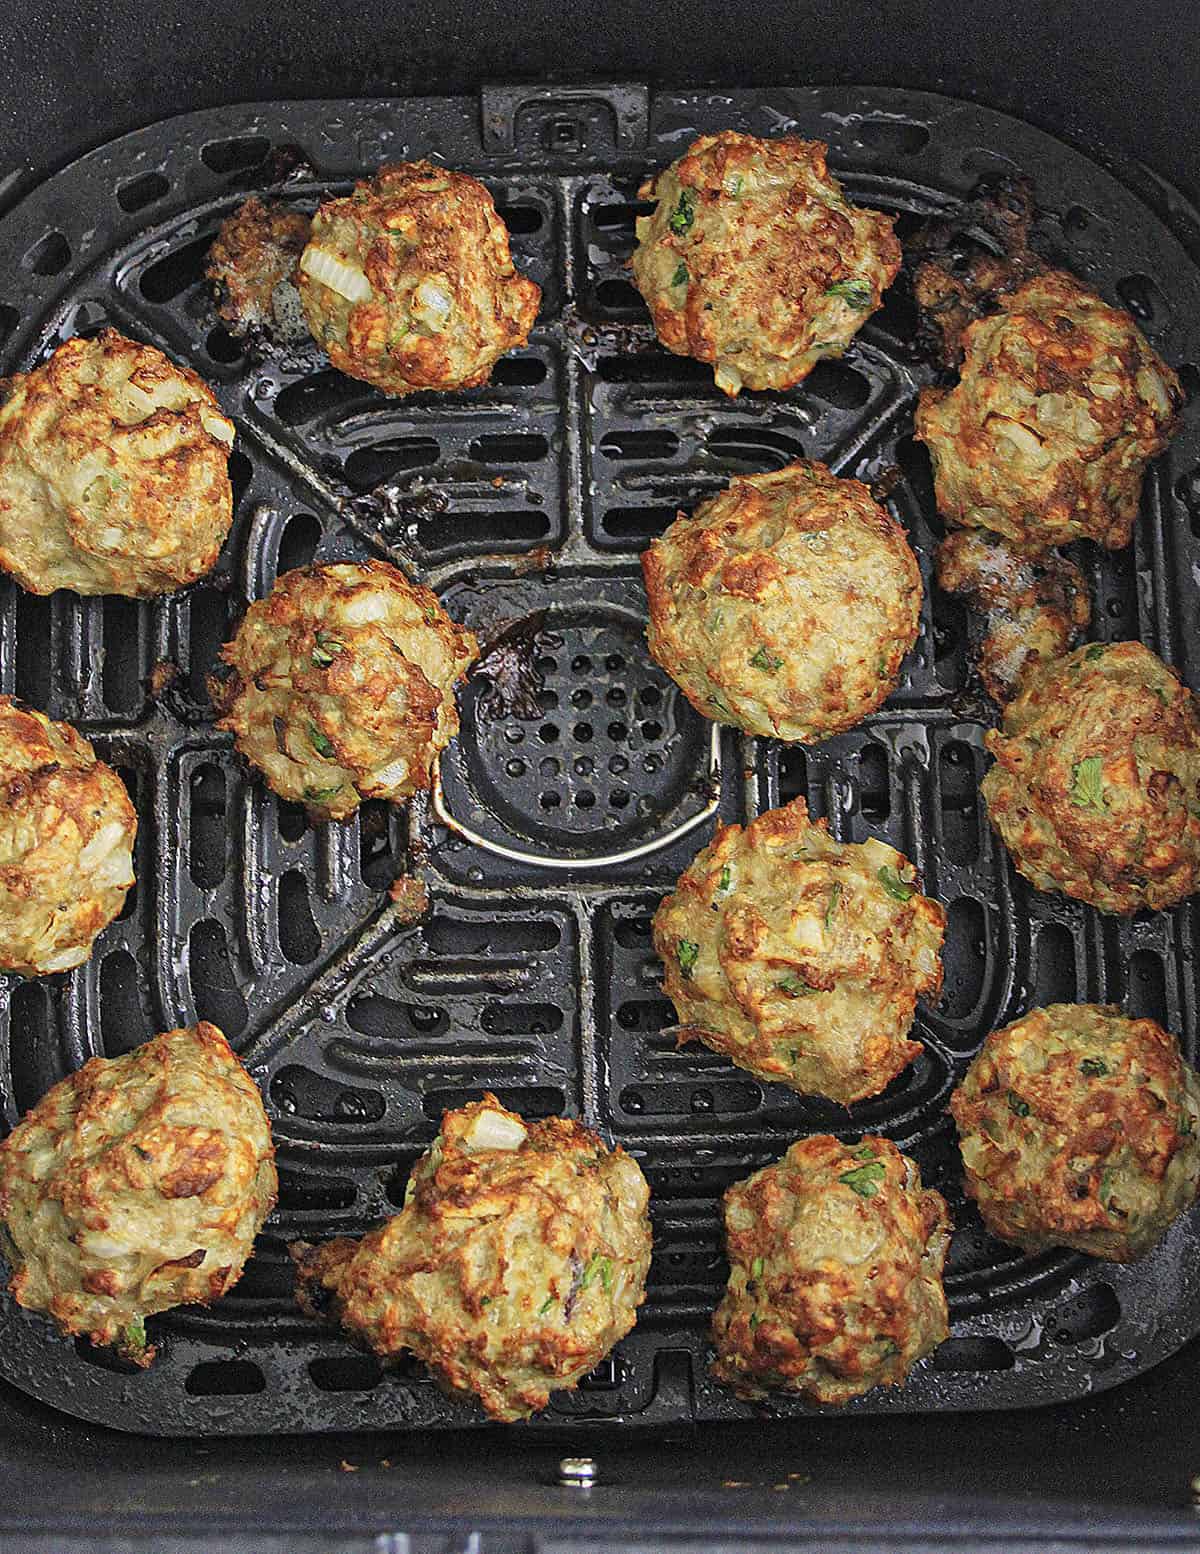 Twelve chicken meatballs in the basket of the air fryer.